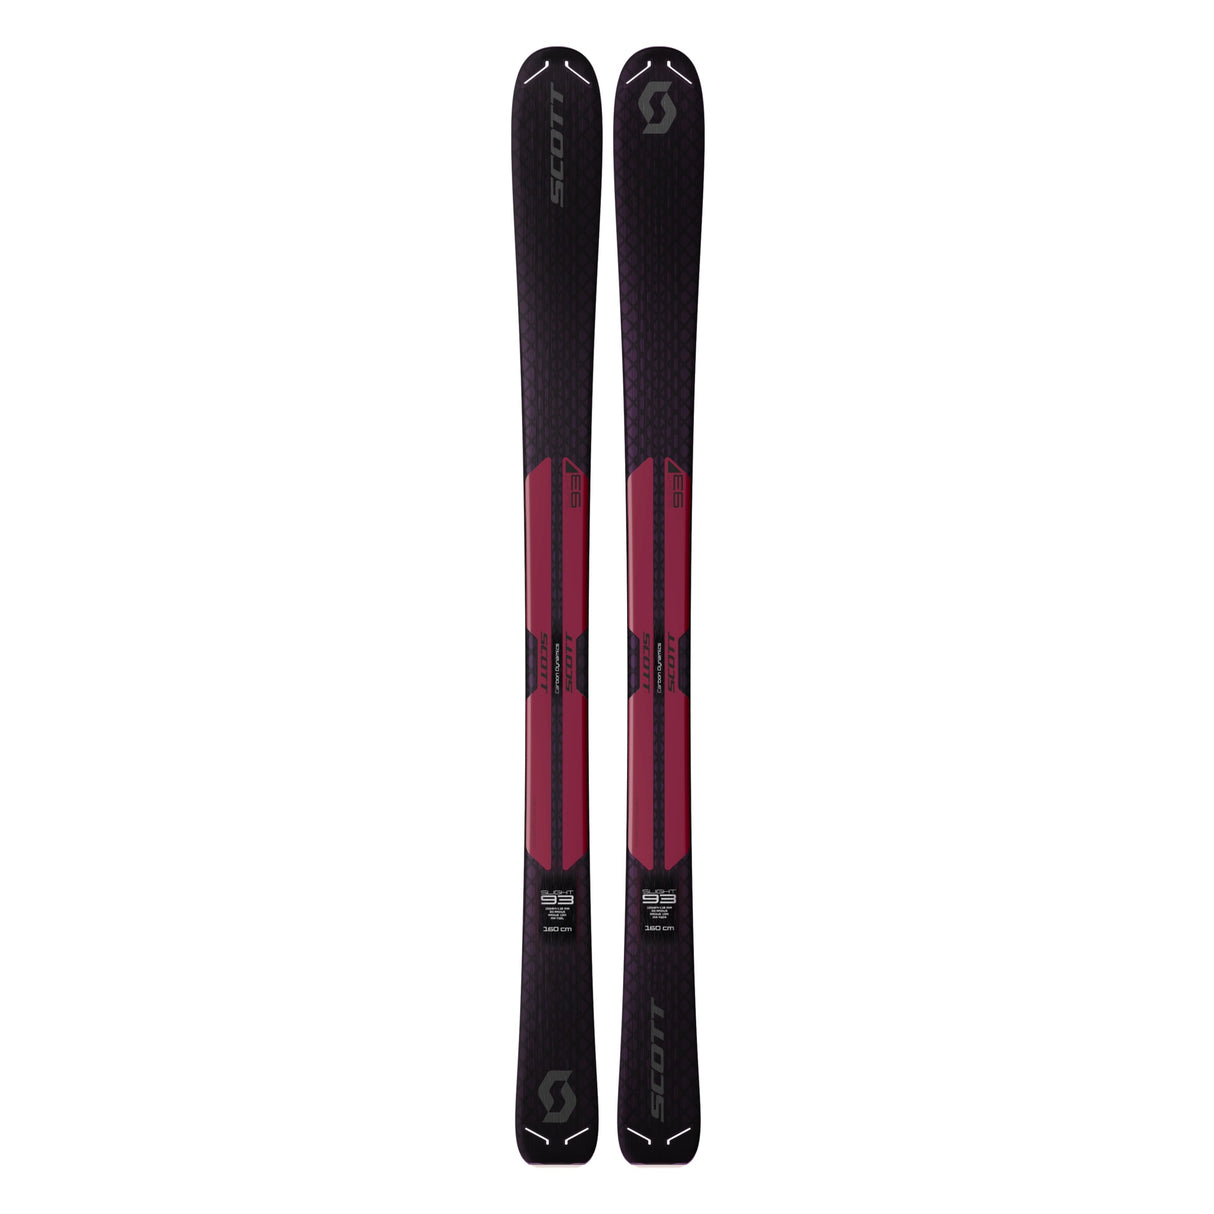 Slight 93 Women's Skis including Scott M10 bindings